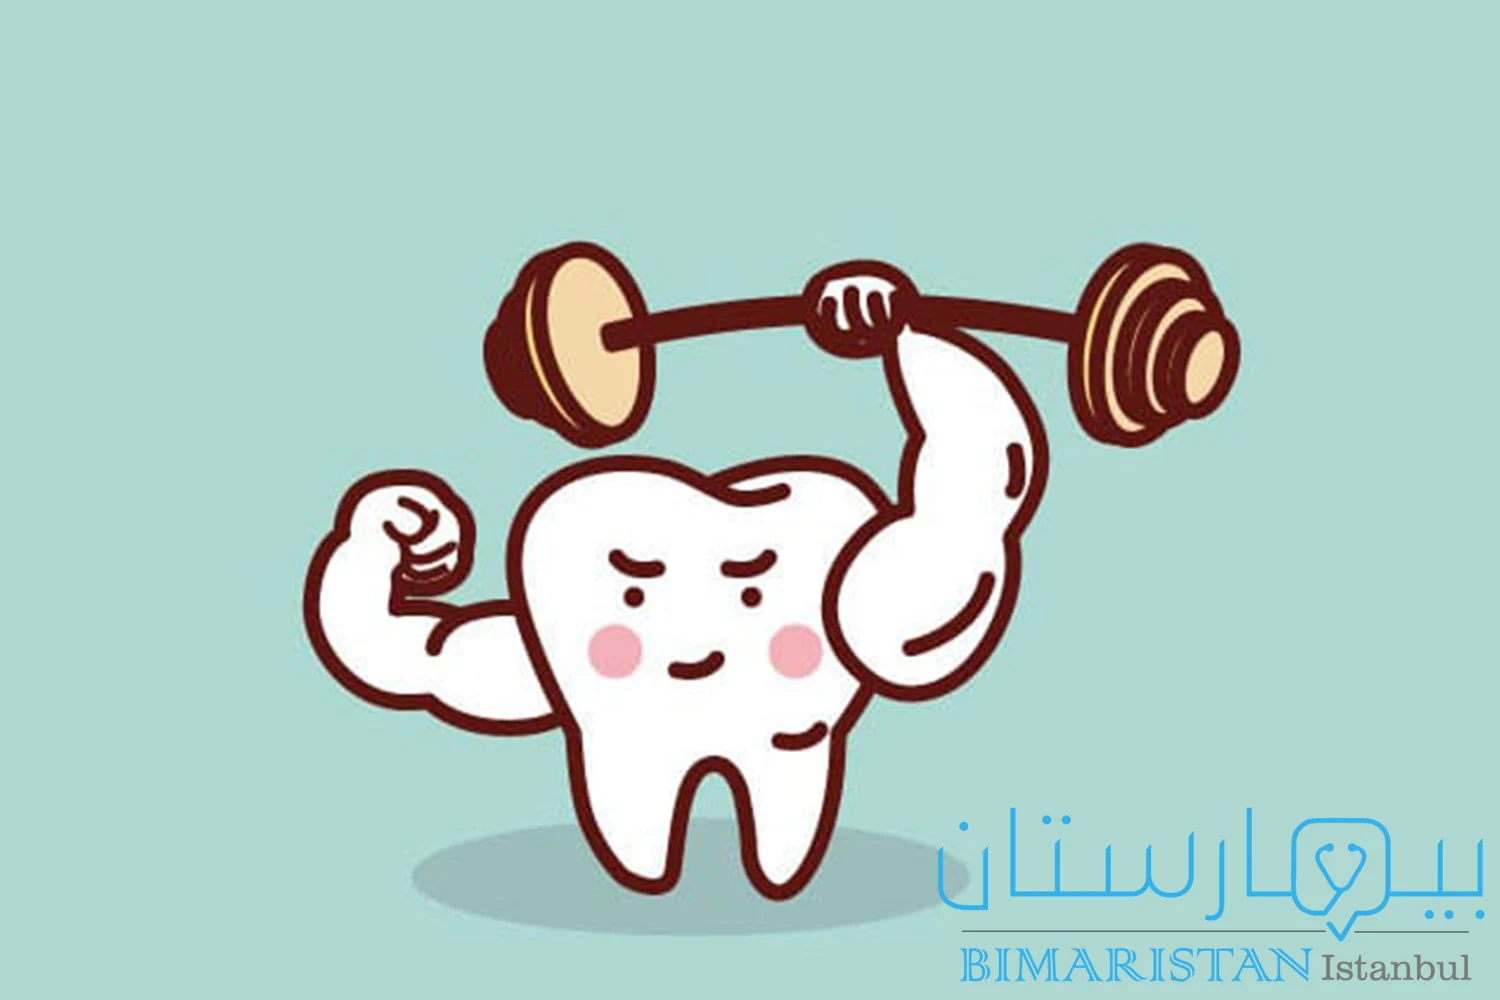 لعلاجات الفلور دور مهم جداً في تقوية الأسنان وتقليل النخور عند الأطفال والبالغين ويمكنك الإستفادة منه عن طريق تطبيقه في عيادة الأسنان بشكل طلاء يدعى ورنيش الفلورايد